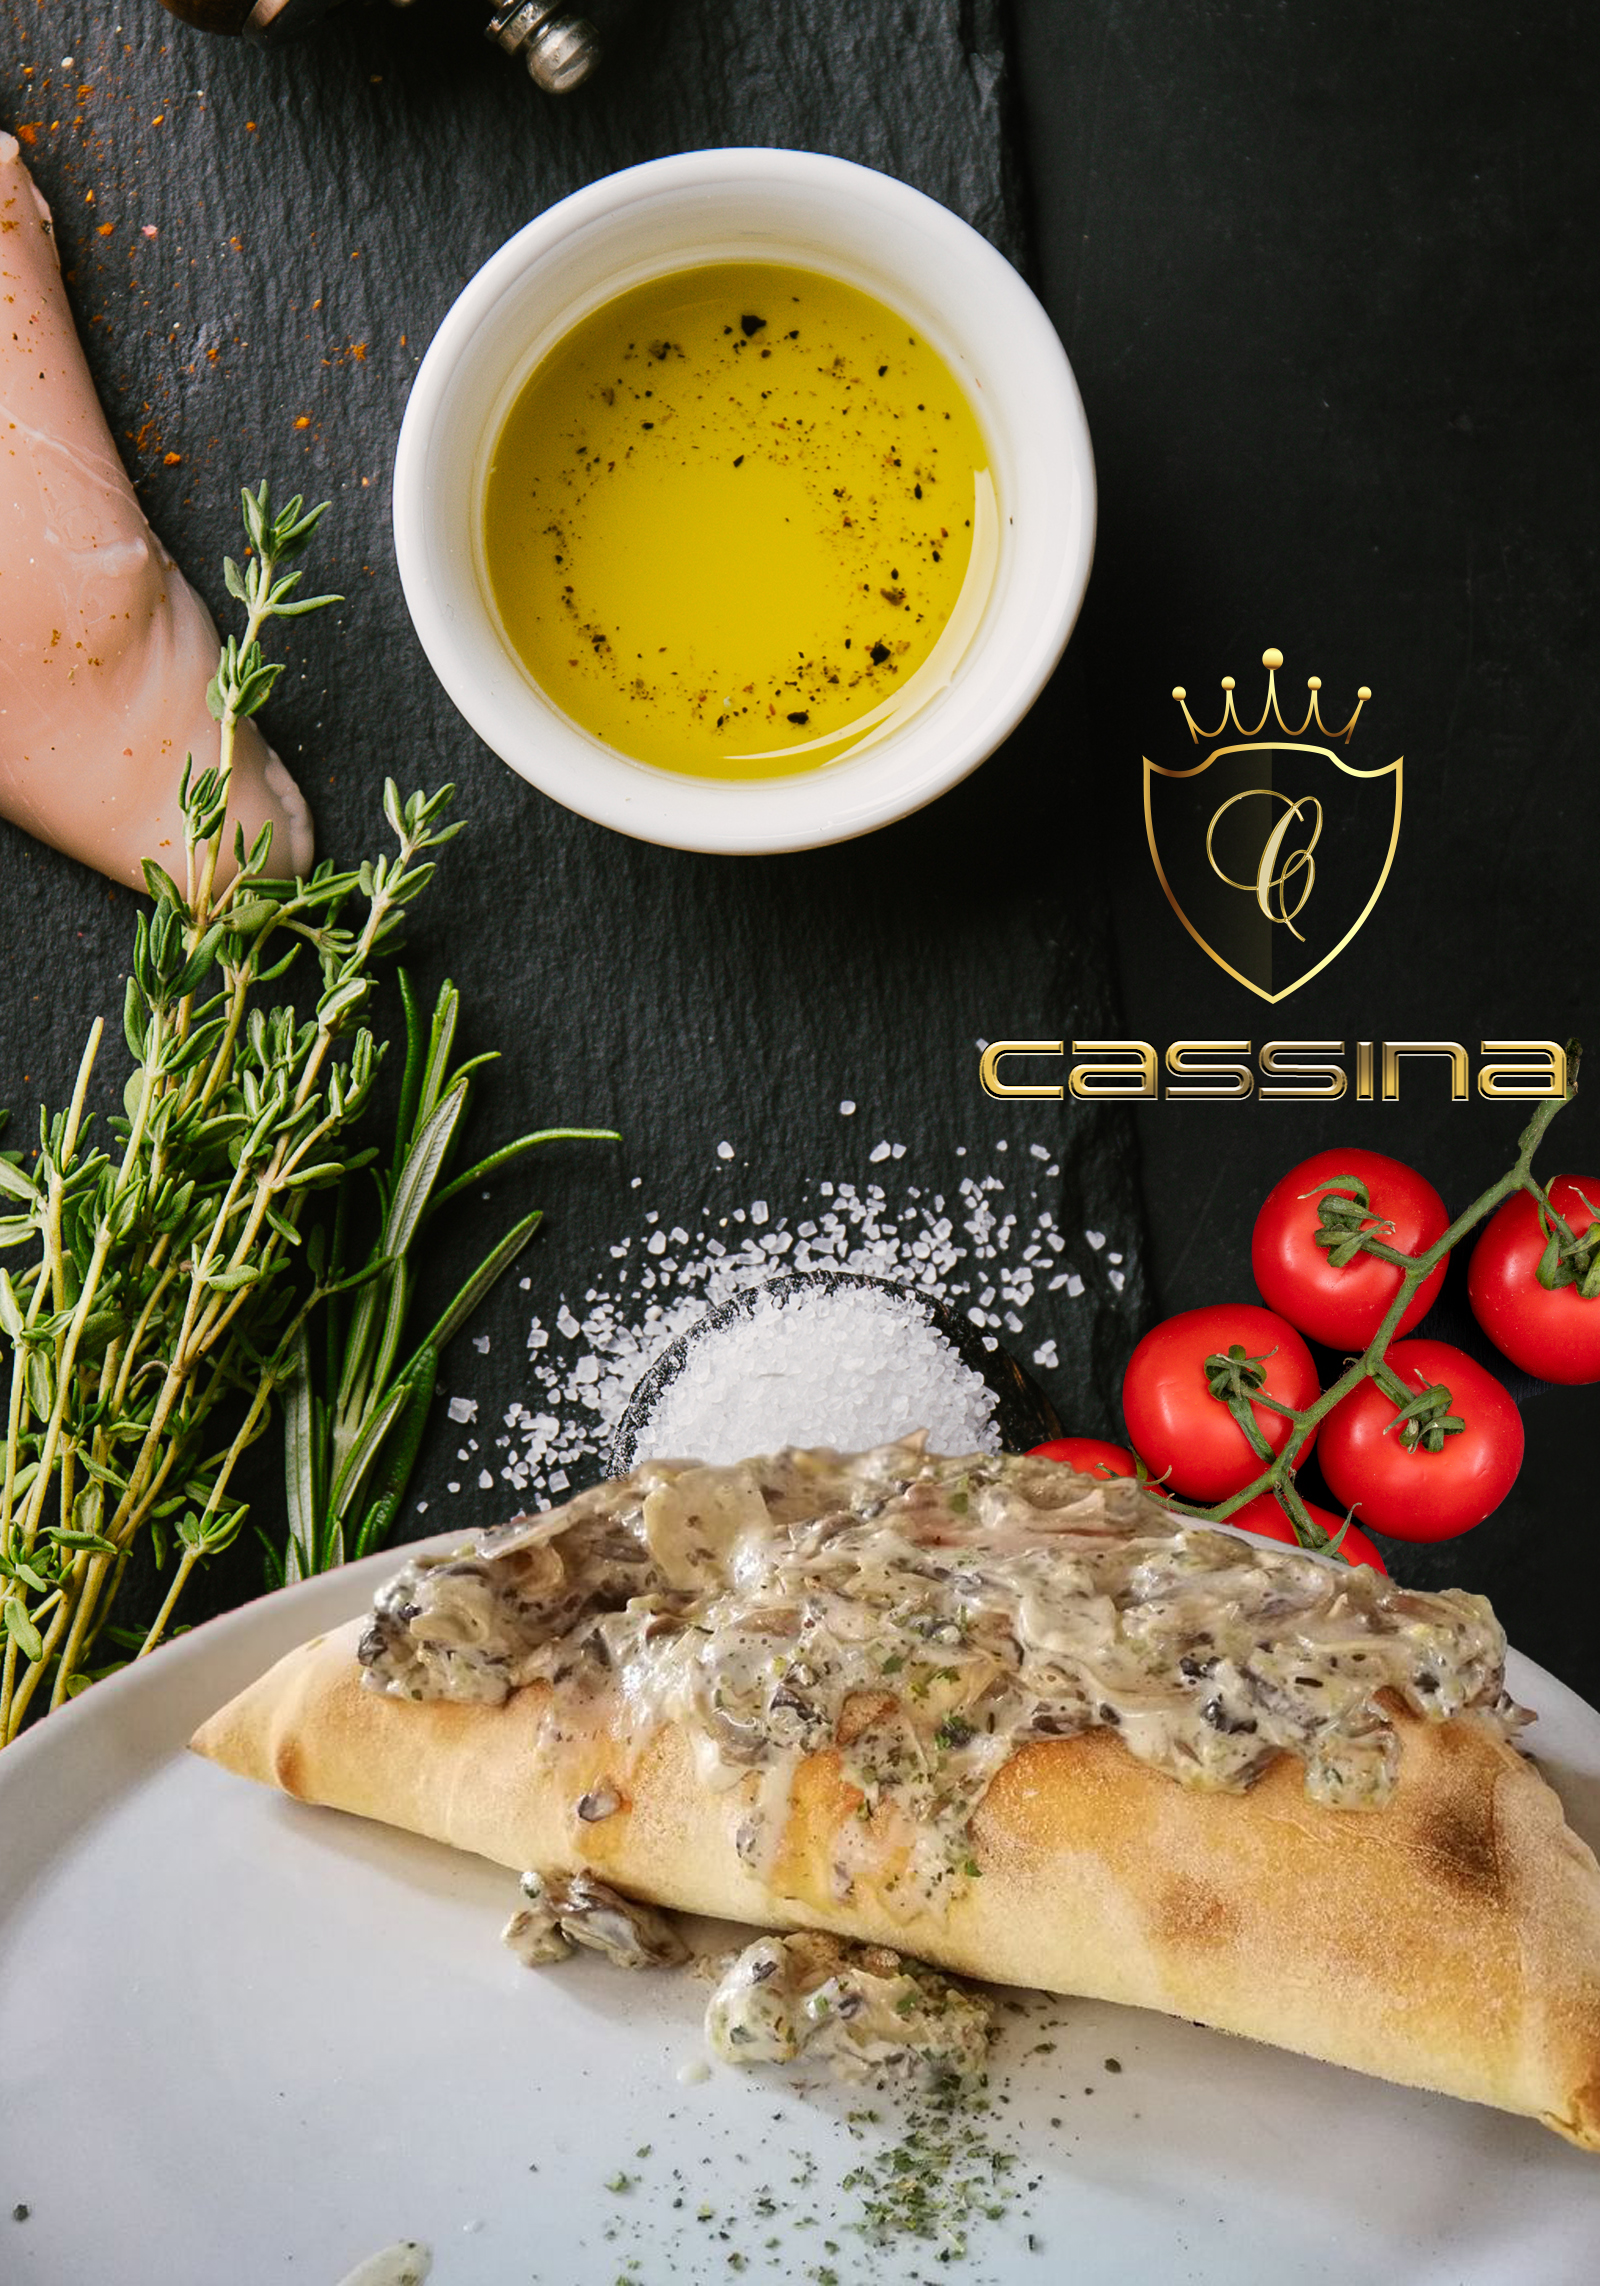 Cassina Gastro Pub-Maslenica